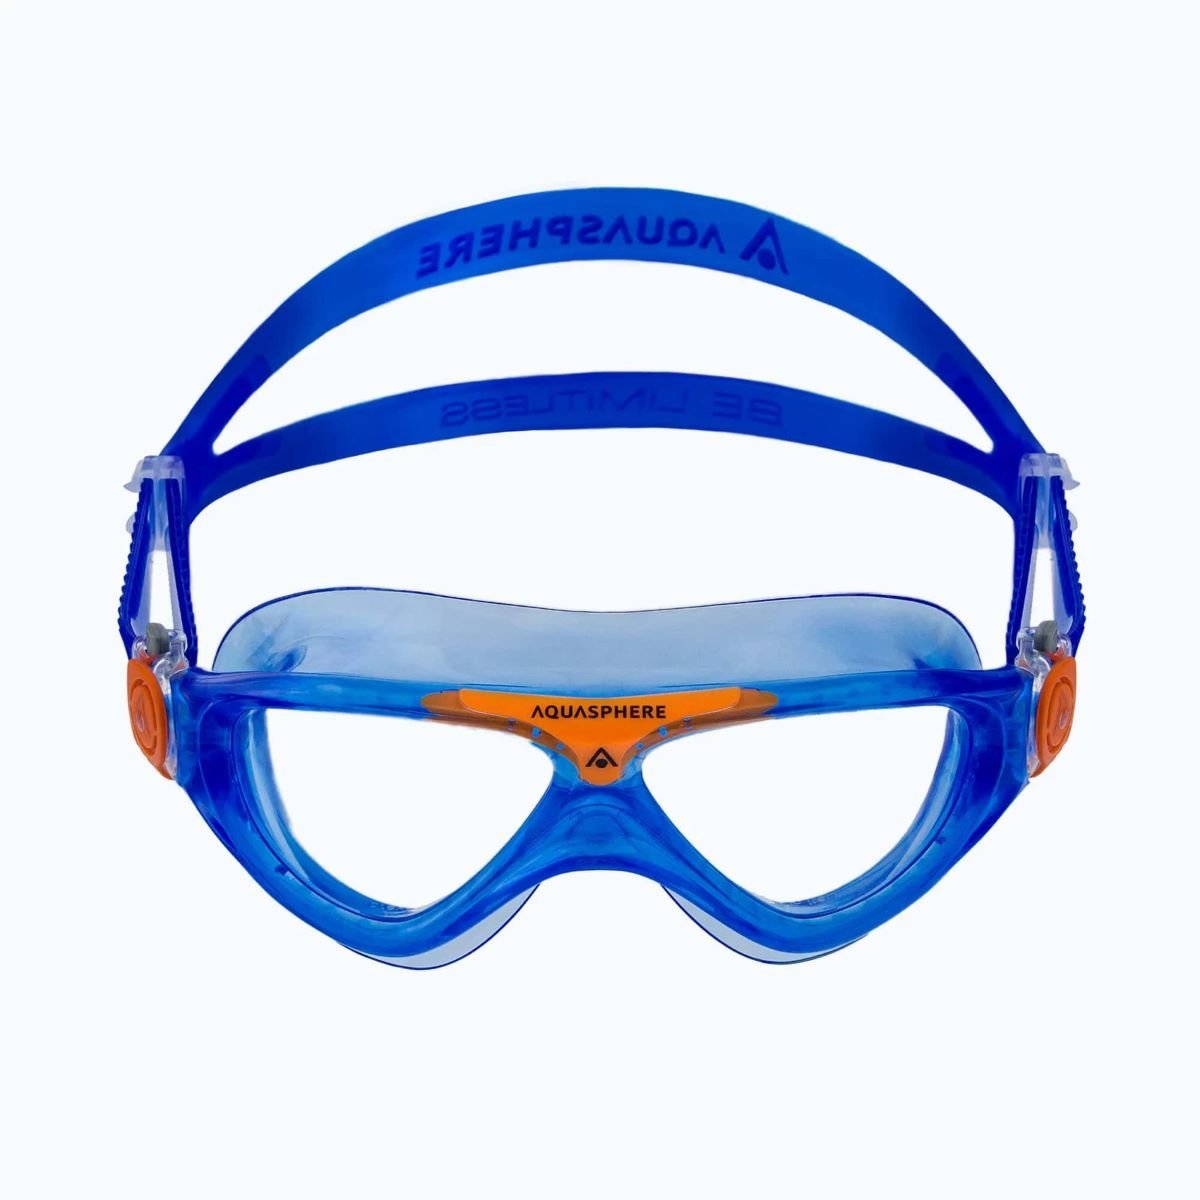 Okuliare AquaLung Vista J - modrá